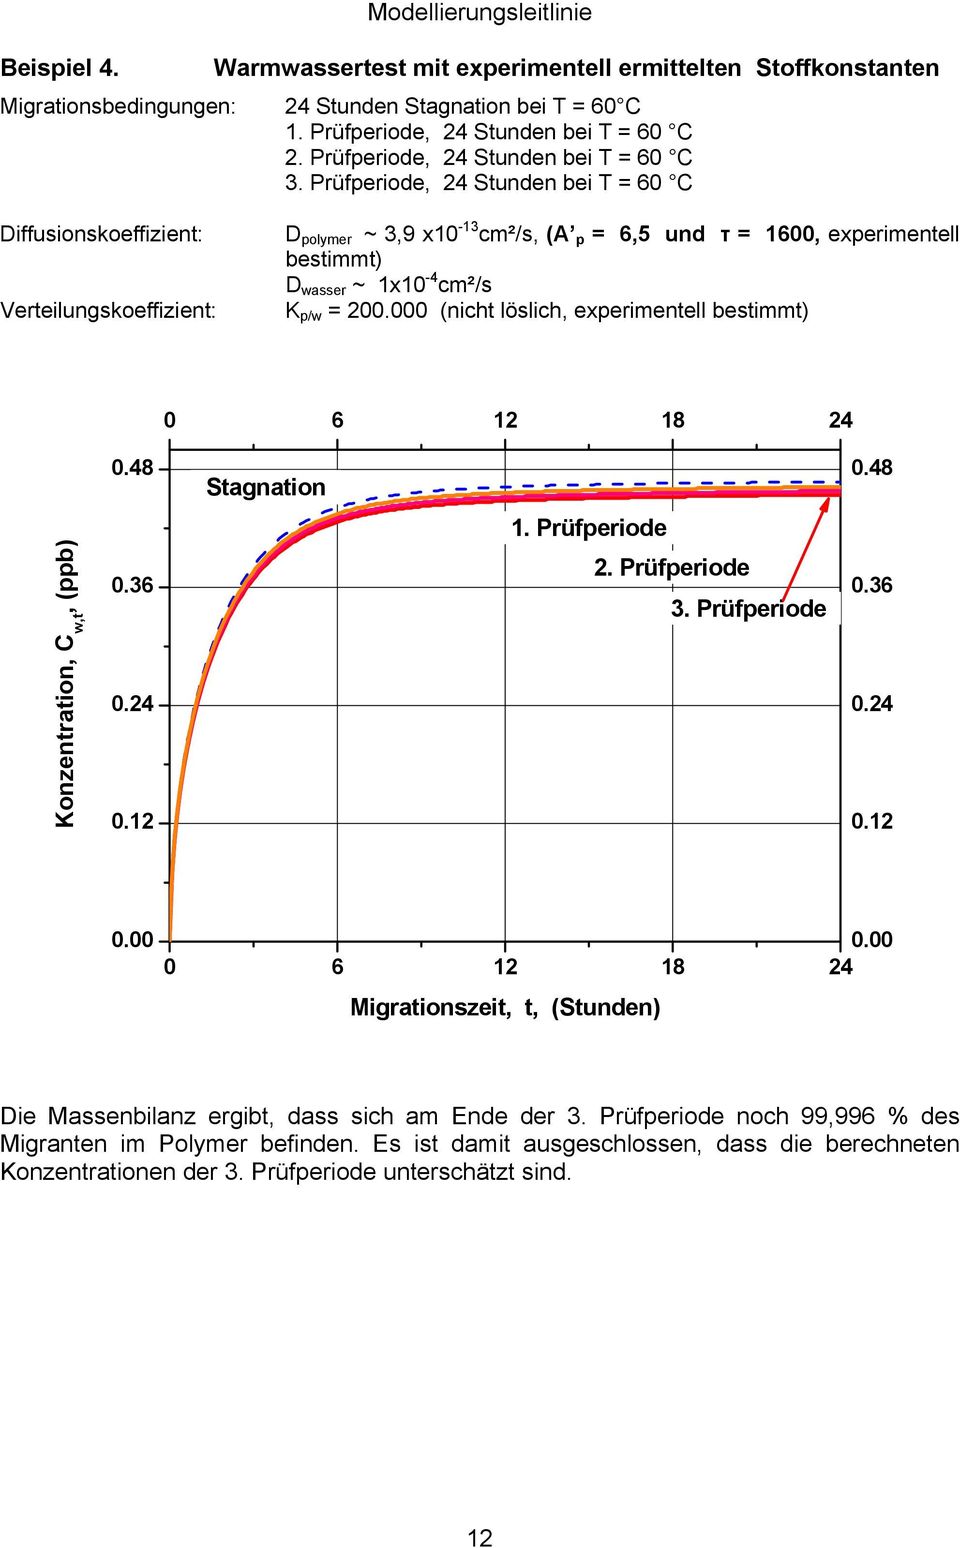 Prüfperiode, 24 Stunden bei T = 60 C Diffusionskoeffizient: Verteilungskoeffizient: D polymer ~ 3,9 x10-13 cm²/s, (A p = 6,5 und τ = 1600, experimentell bestimmt) D wasser ~ 1x10-4 cm²/s K p/w = 200.